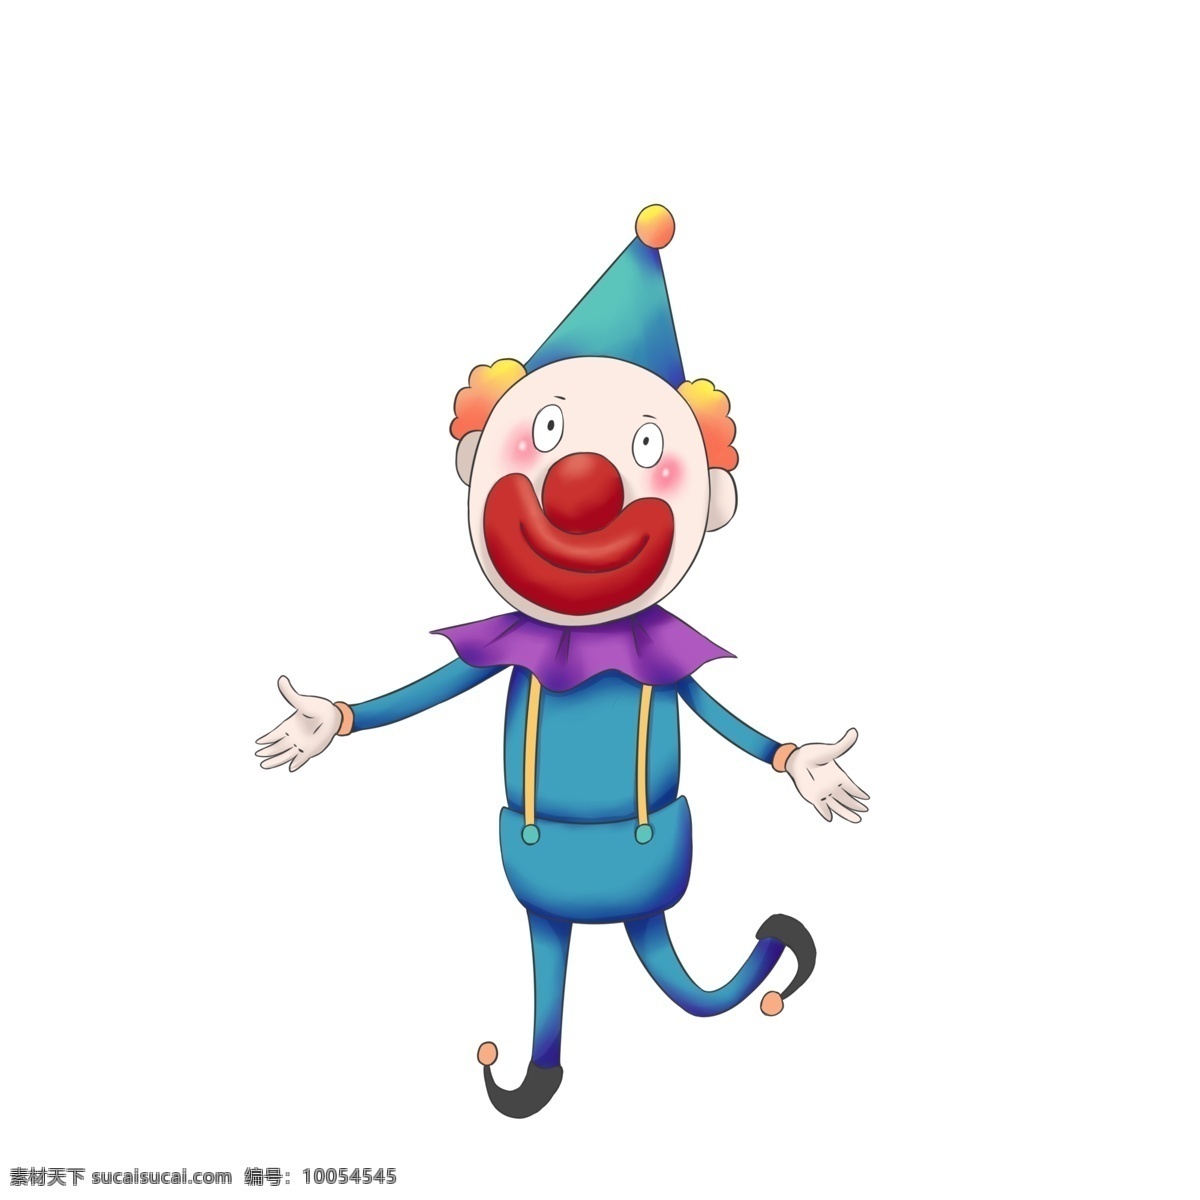 愚人节 小丑 蓝色 开心 气球 飞行 彩色 彩色小丑 两个小丑 可爱的小丑 拿气球的小丑 可爱